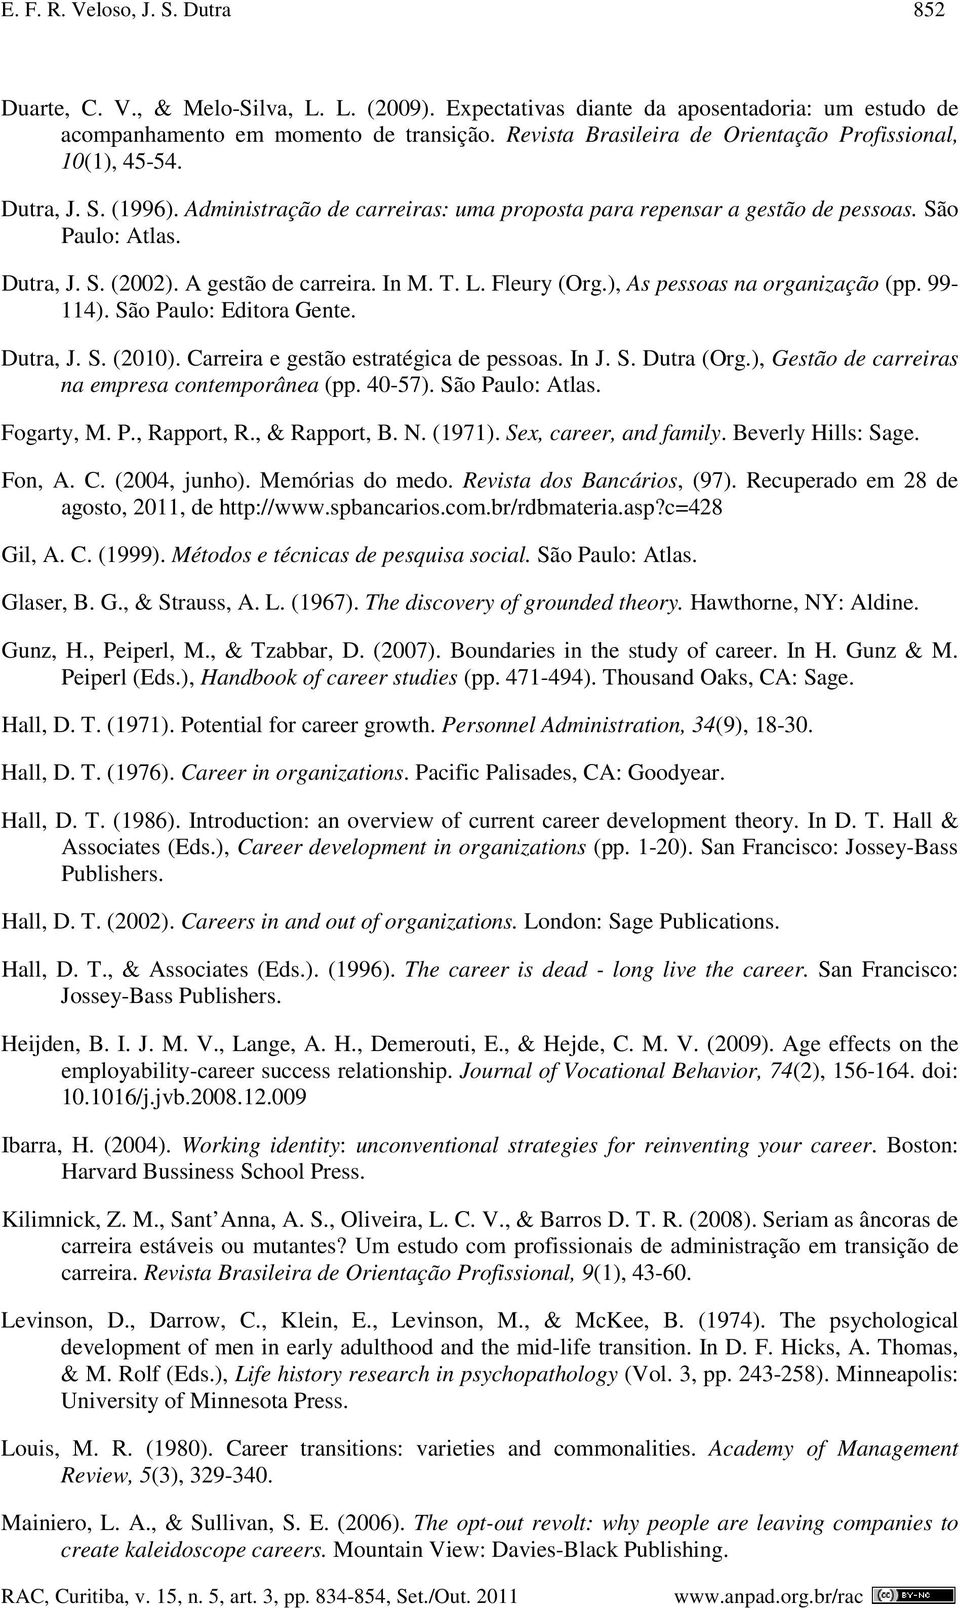 A gestão de carreira. In M. T. L. Fleury (Org.), As pessoas na organização (pp. 99-114). São Paulo: Editora Gente. Dutra, J. S. (2010). Carreira e gestão estratégica de pessoas. In J. S. Dutra (Org.